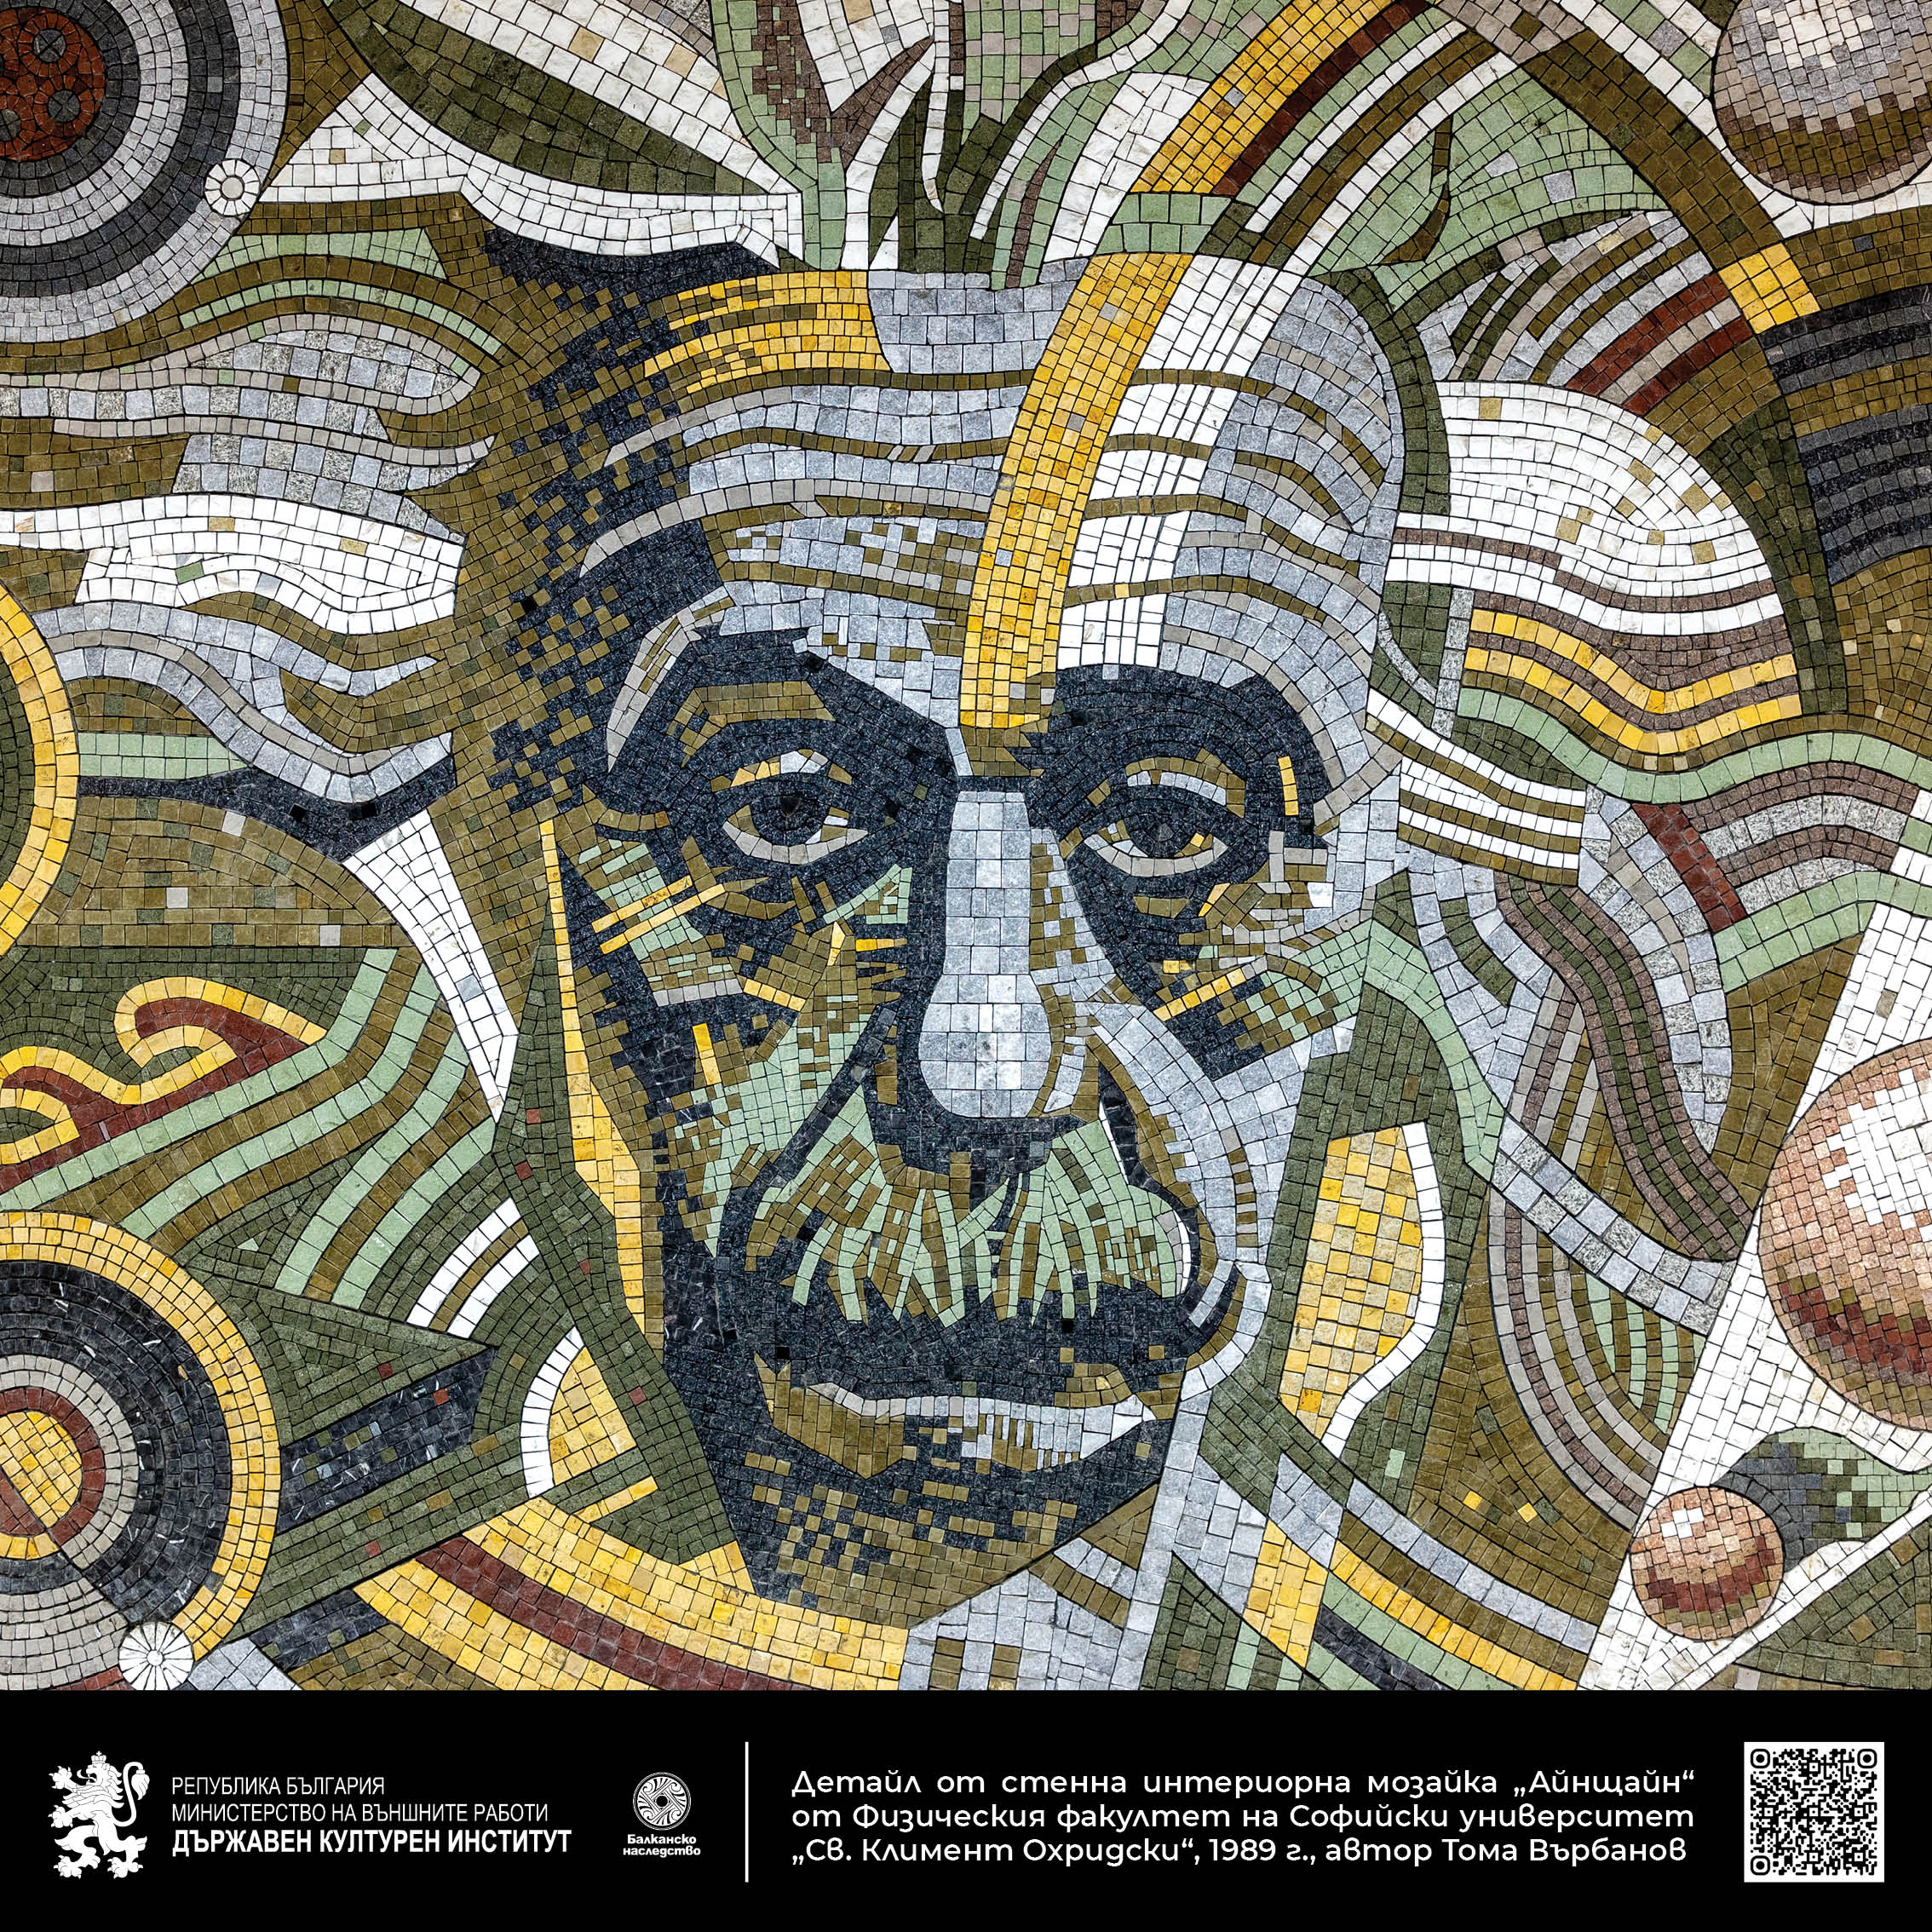 Детайл от стенна интериорна мозайка „Айнщайн“ от Физическия факултет на Софийски университет „Св. Климент Охридски“, 1989 г., автор Тома Върбанов